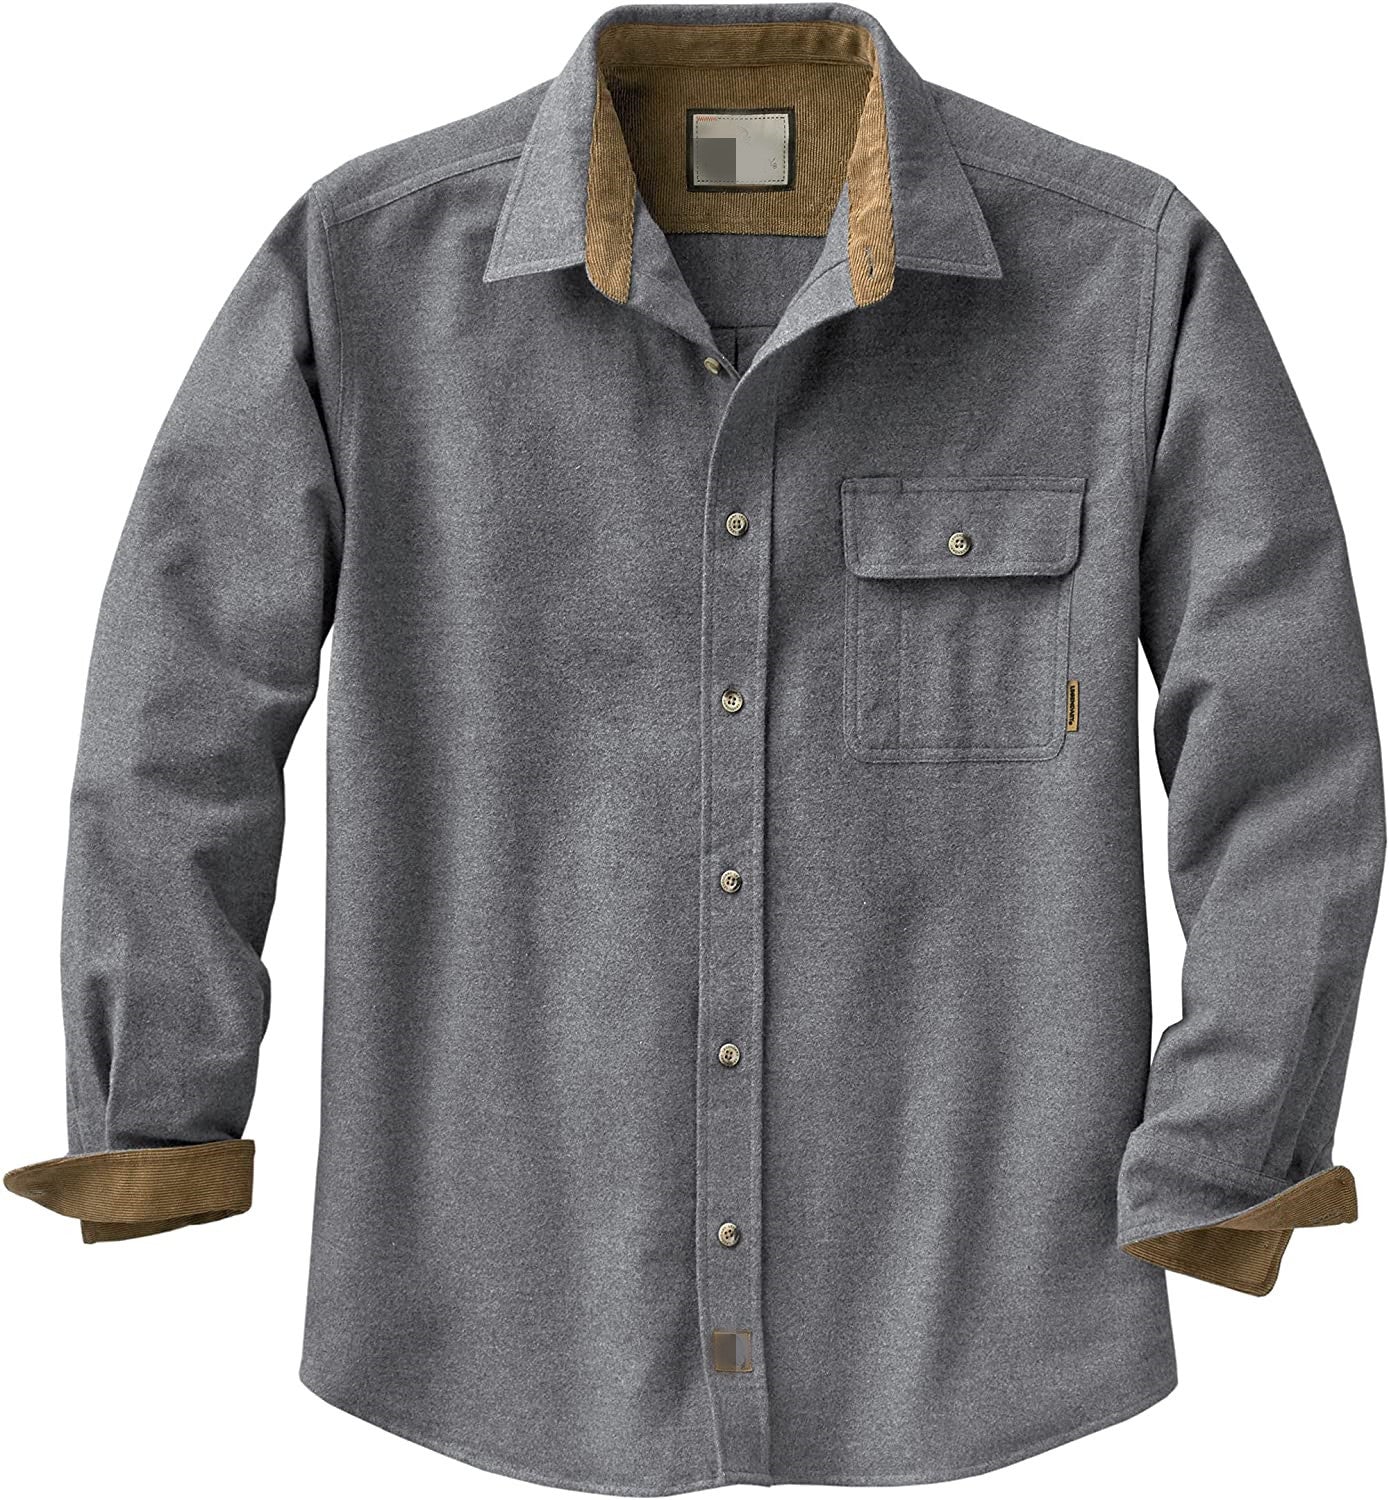 Casual Long Sleeves Shirts for Men-Shirts & Tops-Gray-S-Free Shipping at meselling99